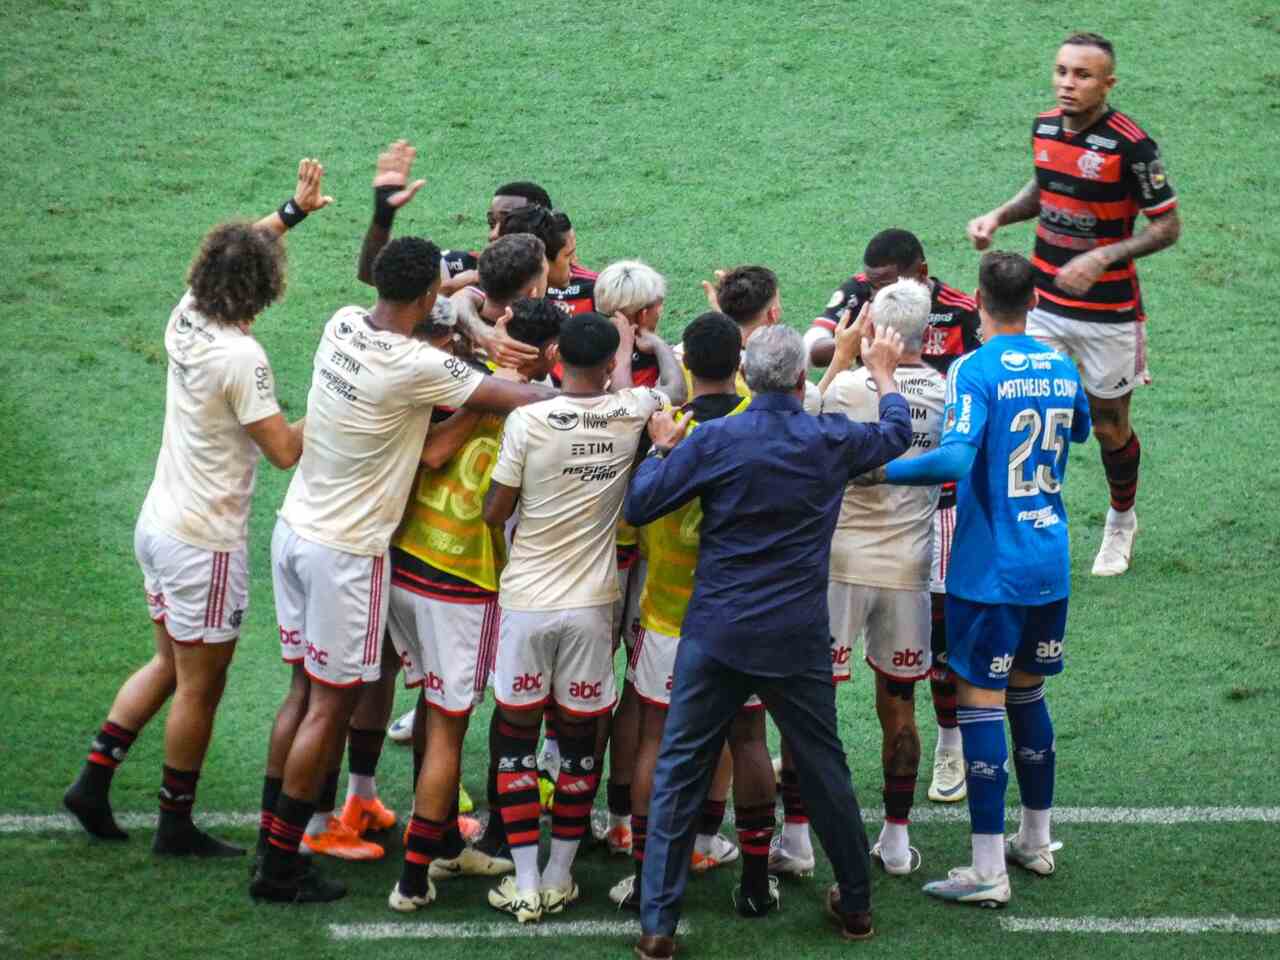 Atuações do Flamengo contra o Corinthians: Lorran brilha em ótima atuação coletiva